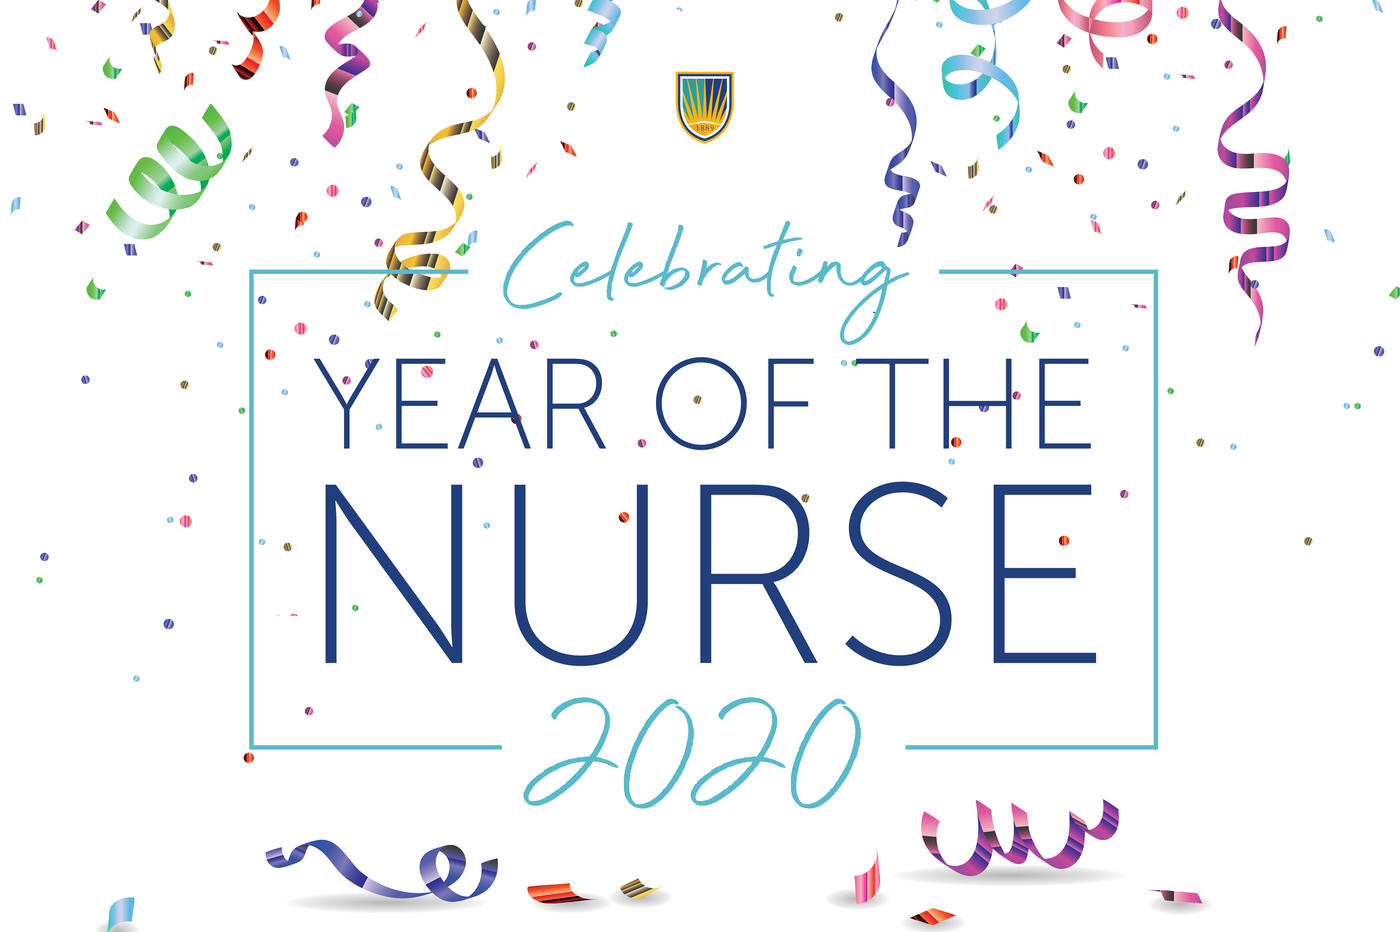 Celebrating Year of the Nurse 2020